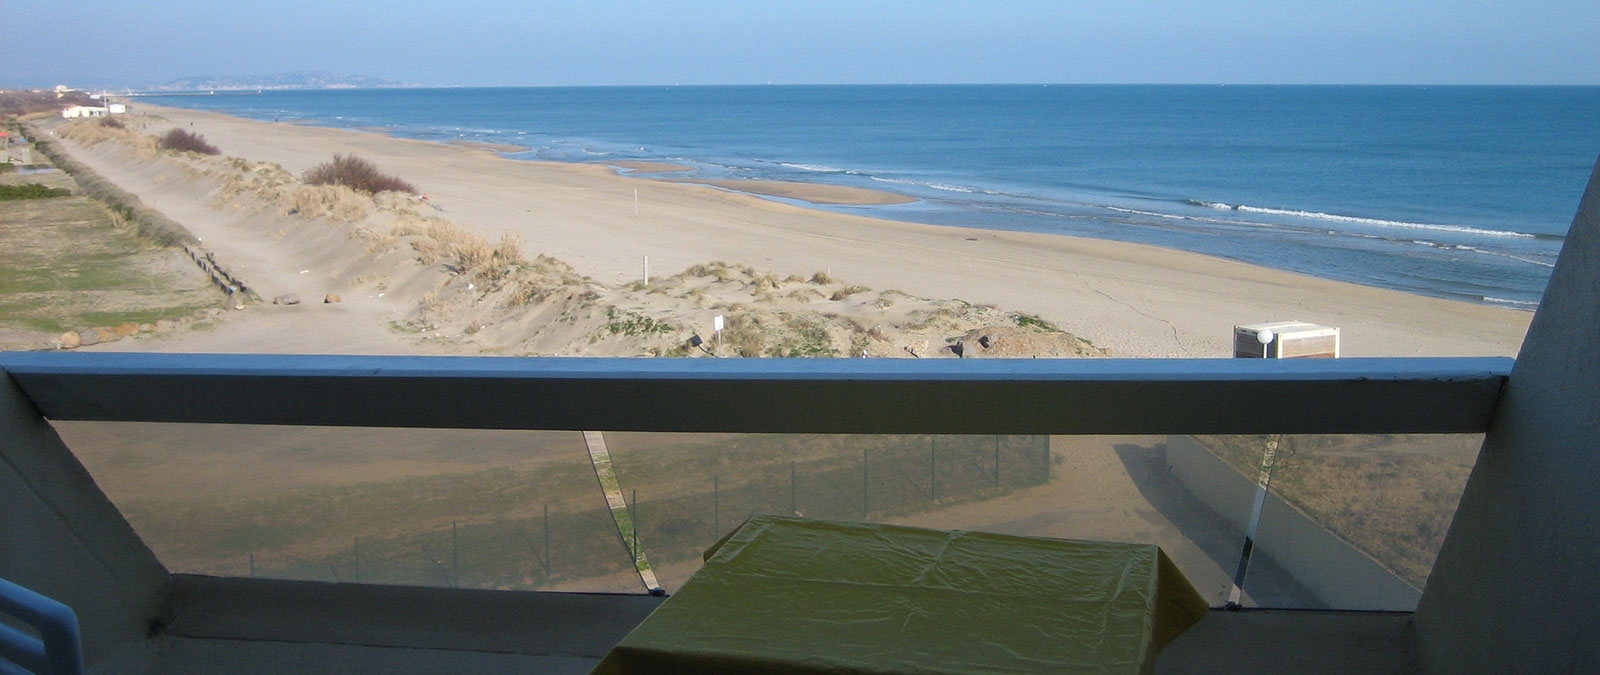 Estudio clásico naturista terraza de alquiler con vista al mar